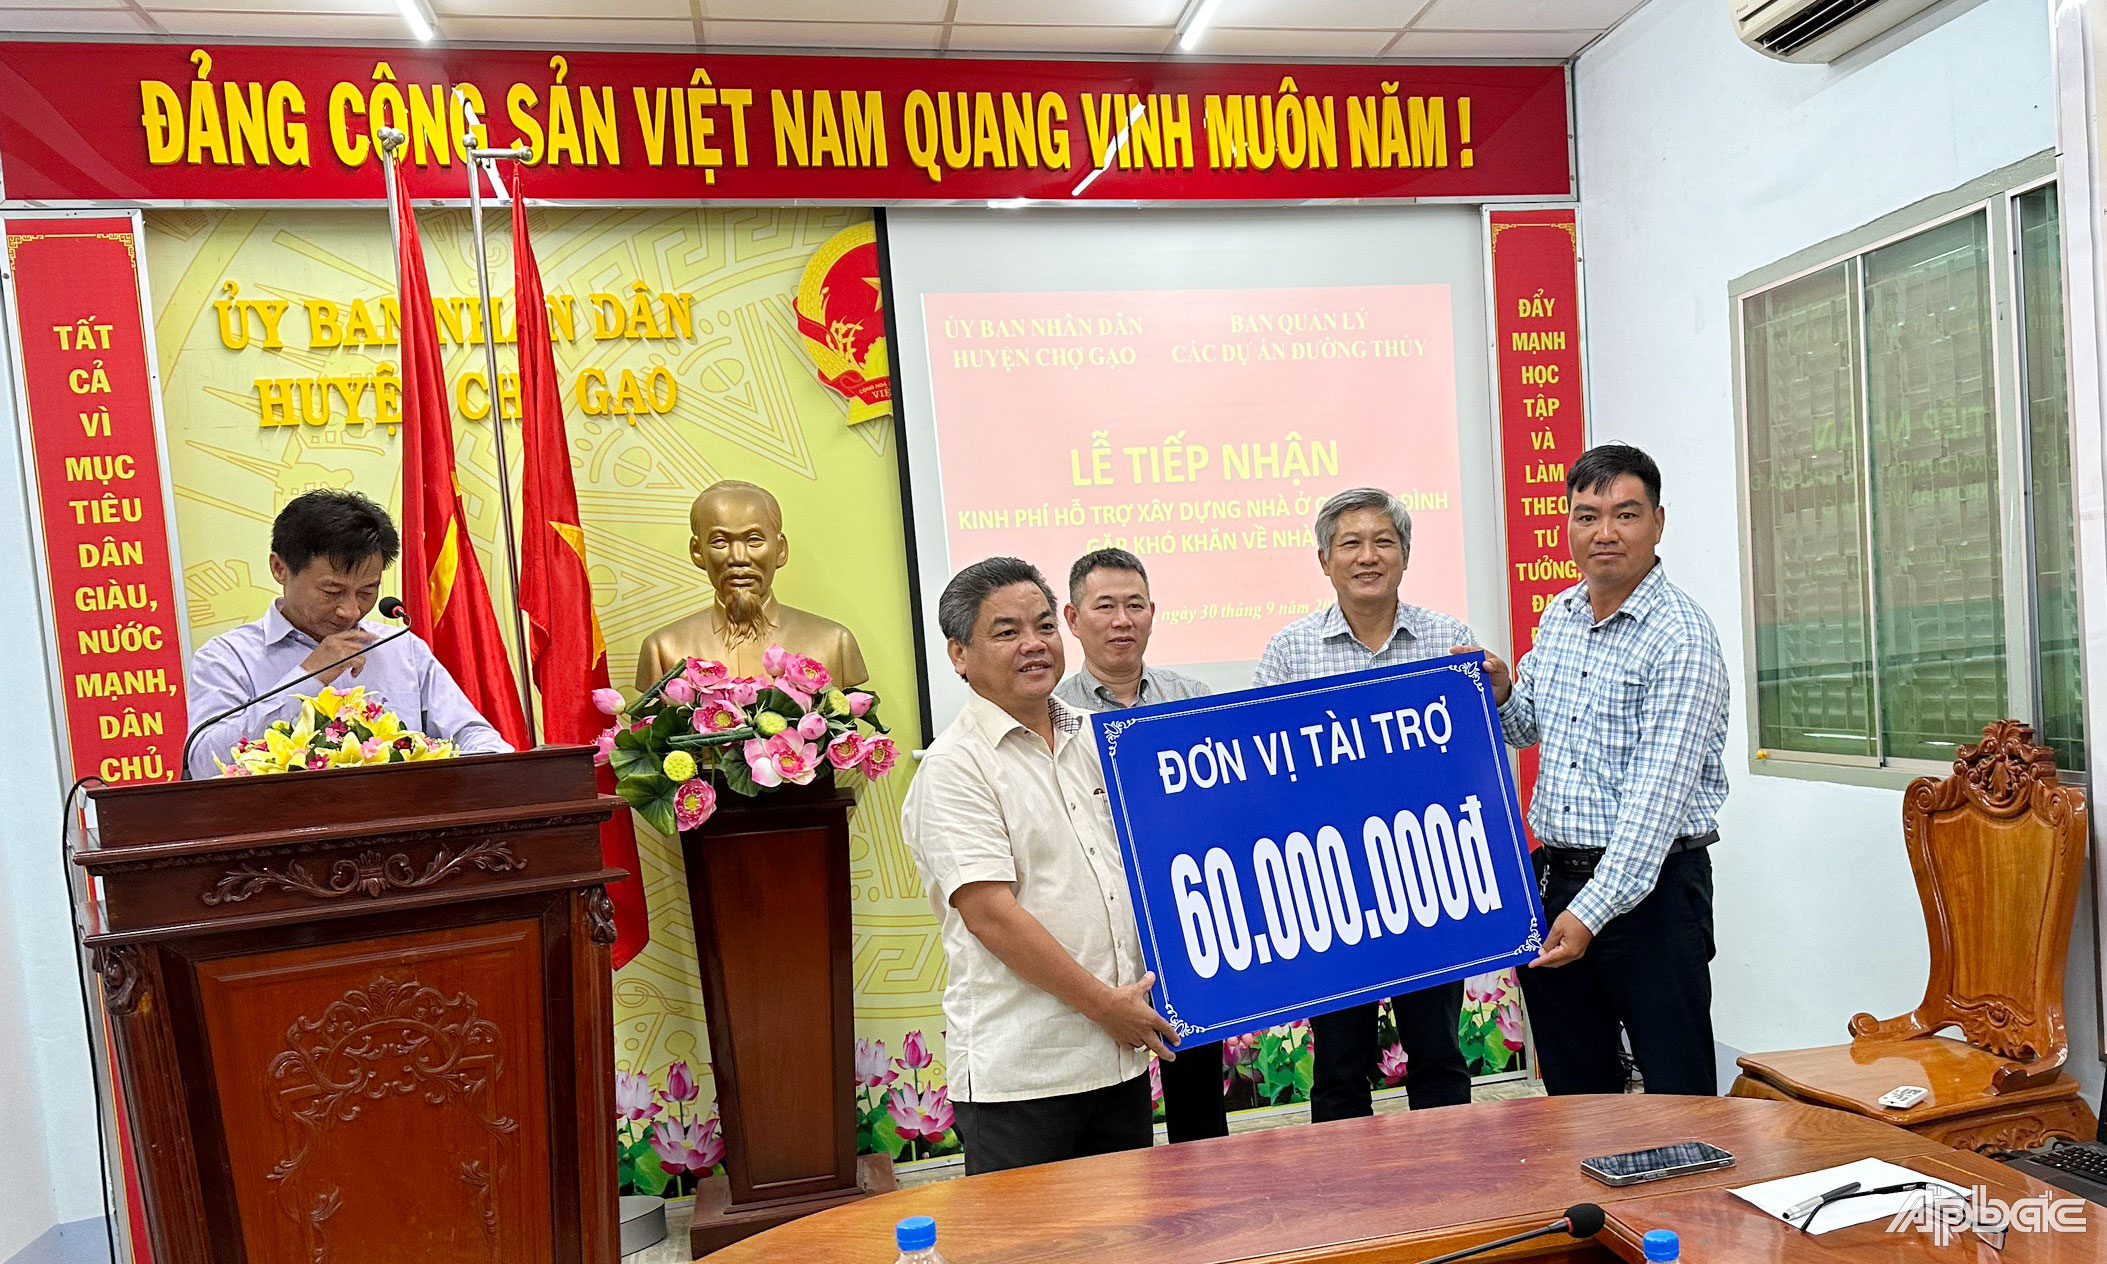 Lãnh đạo Ban Quản lý các dự án Đường thủy trao bảng tượng trưng cho đại diện  UBND huyện Chợ Gạo.